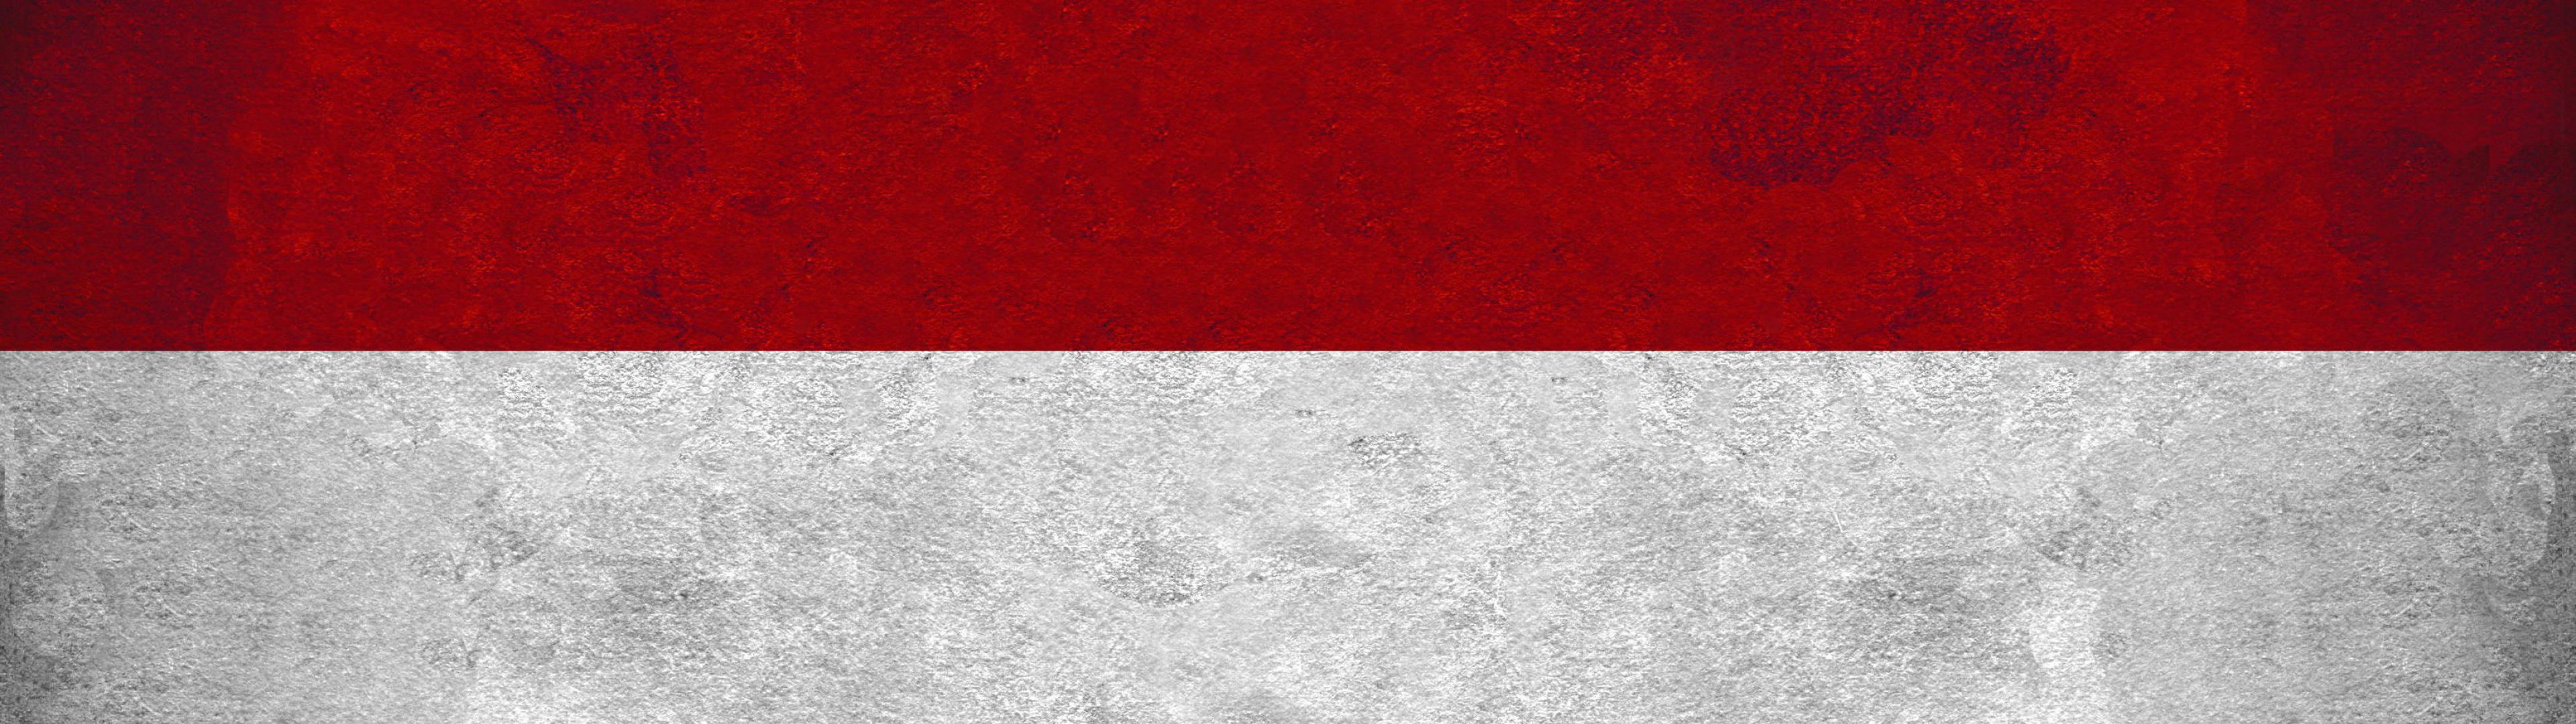 flags indonesia flag ur